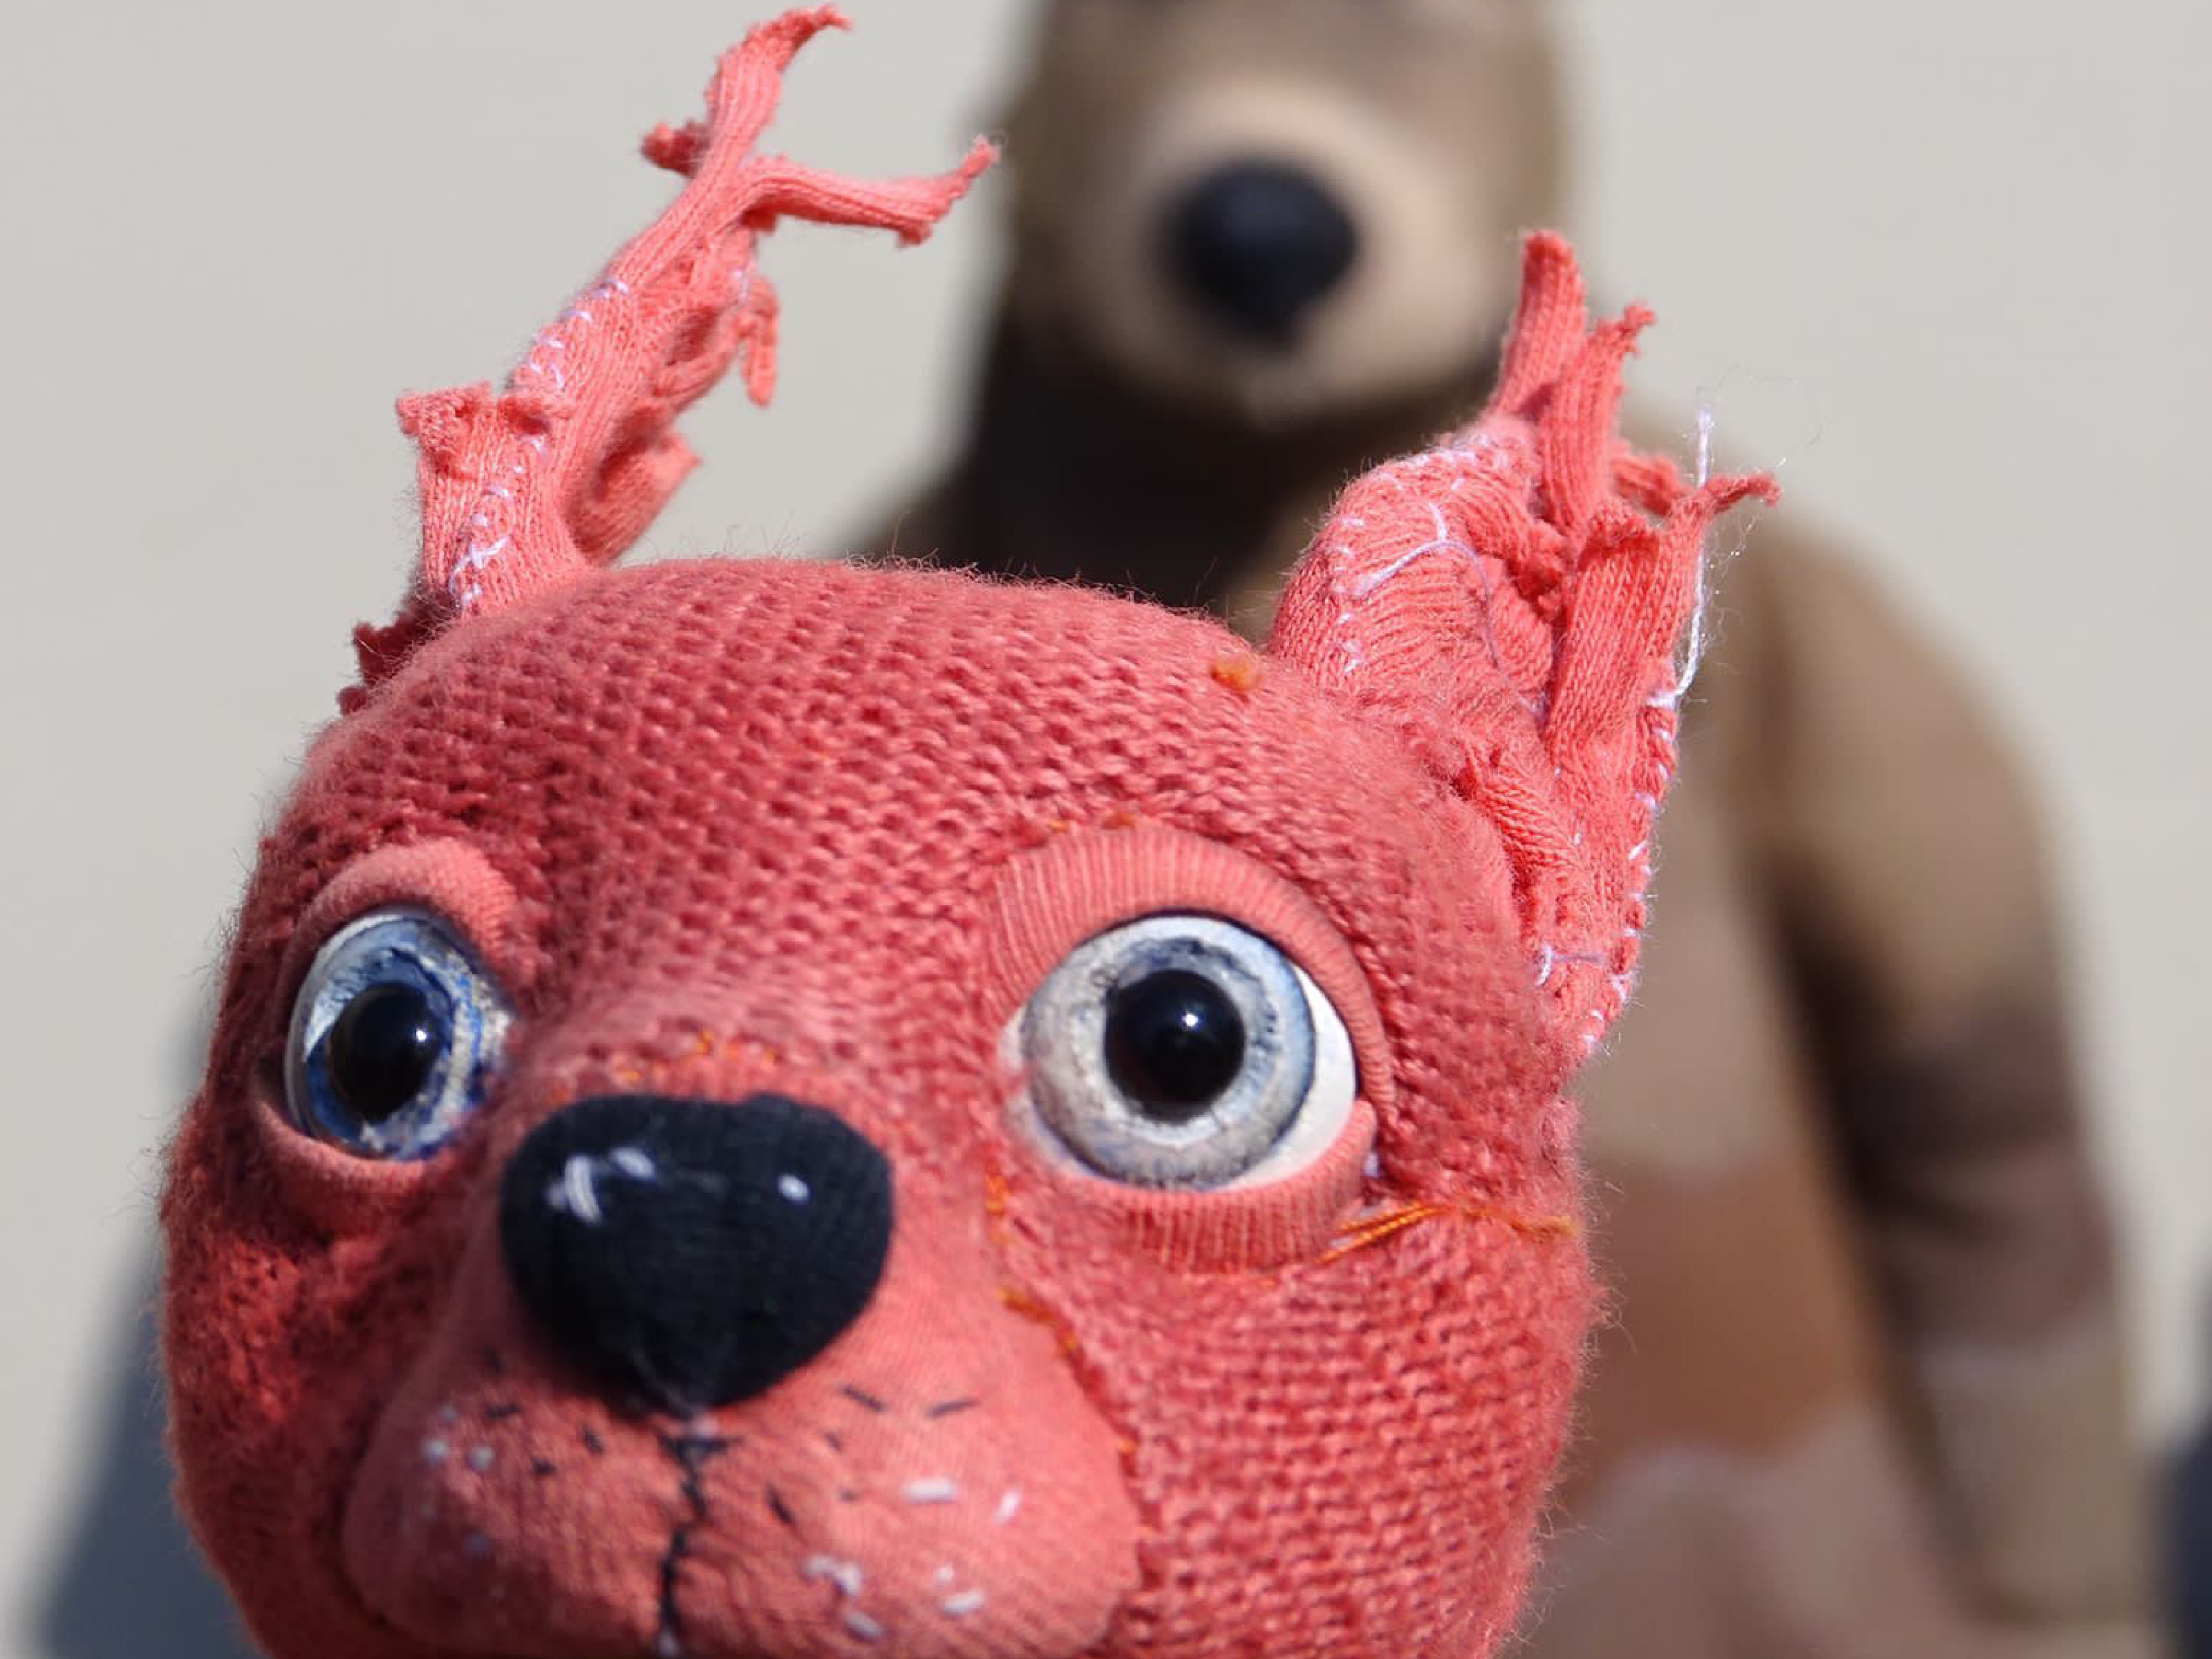 Die Puppe eines Stoffeichhörnchens steht dicht vor der Kameralinse. Das Eichhörnchen hat blaue Augen und gestickte Schnurrhaare. Im Hintergrund steht ein großer Bär.